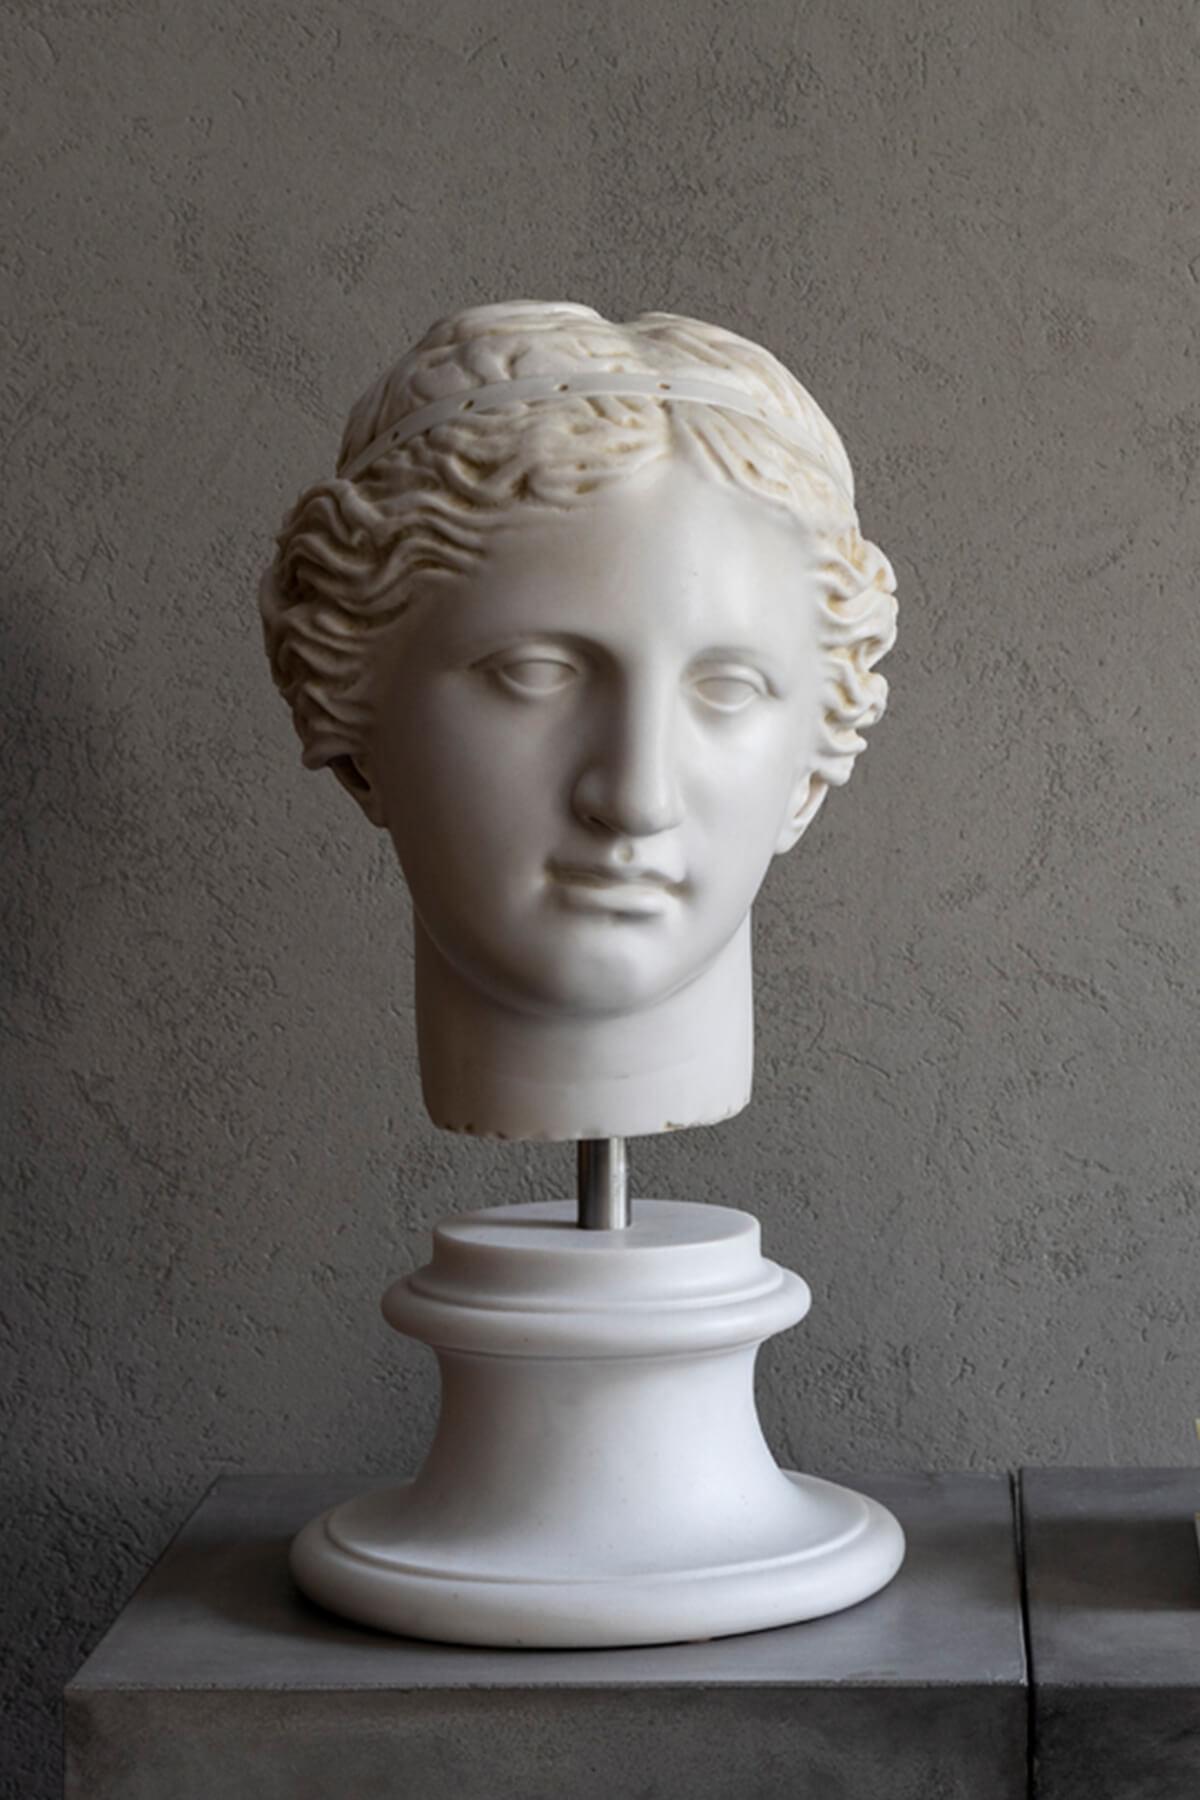 Aphrodite ist in der griechischen Mythologie als Göttin der Liebe und Schönheit bekannt. In der römischen Mythologie wird sie Venus genannt. Das Original ist im Louvre-Museum in Paris ausgestellt.

Aphrodite, die Göttin der Liebe und Schönheit in